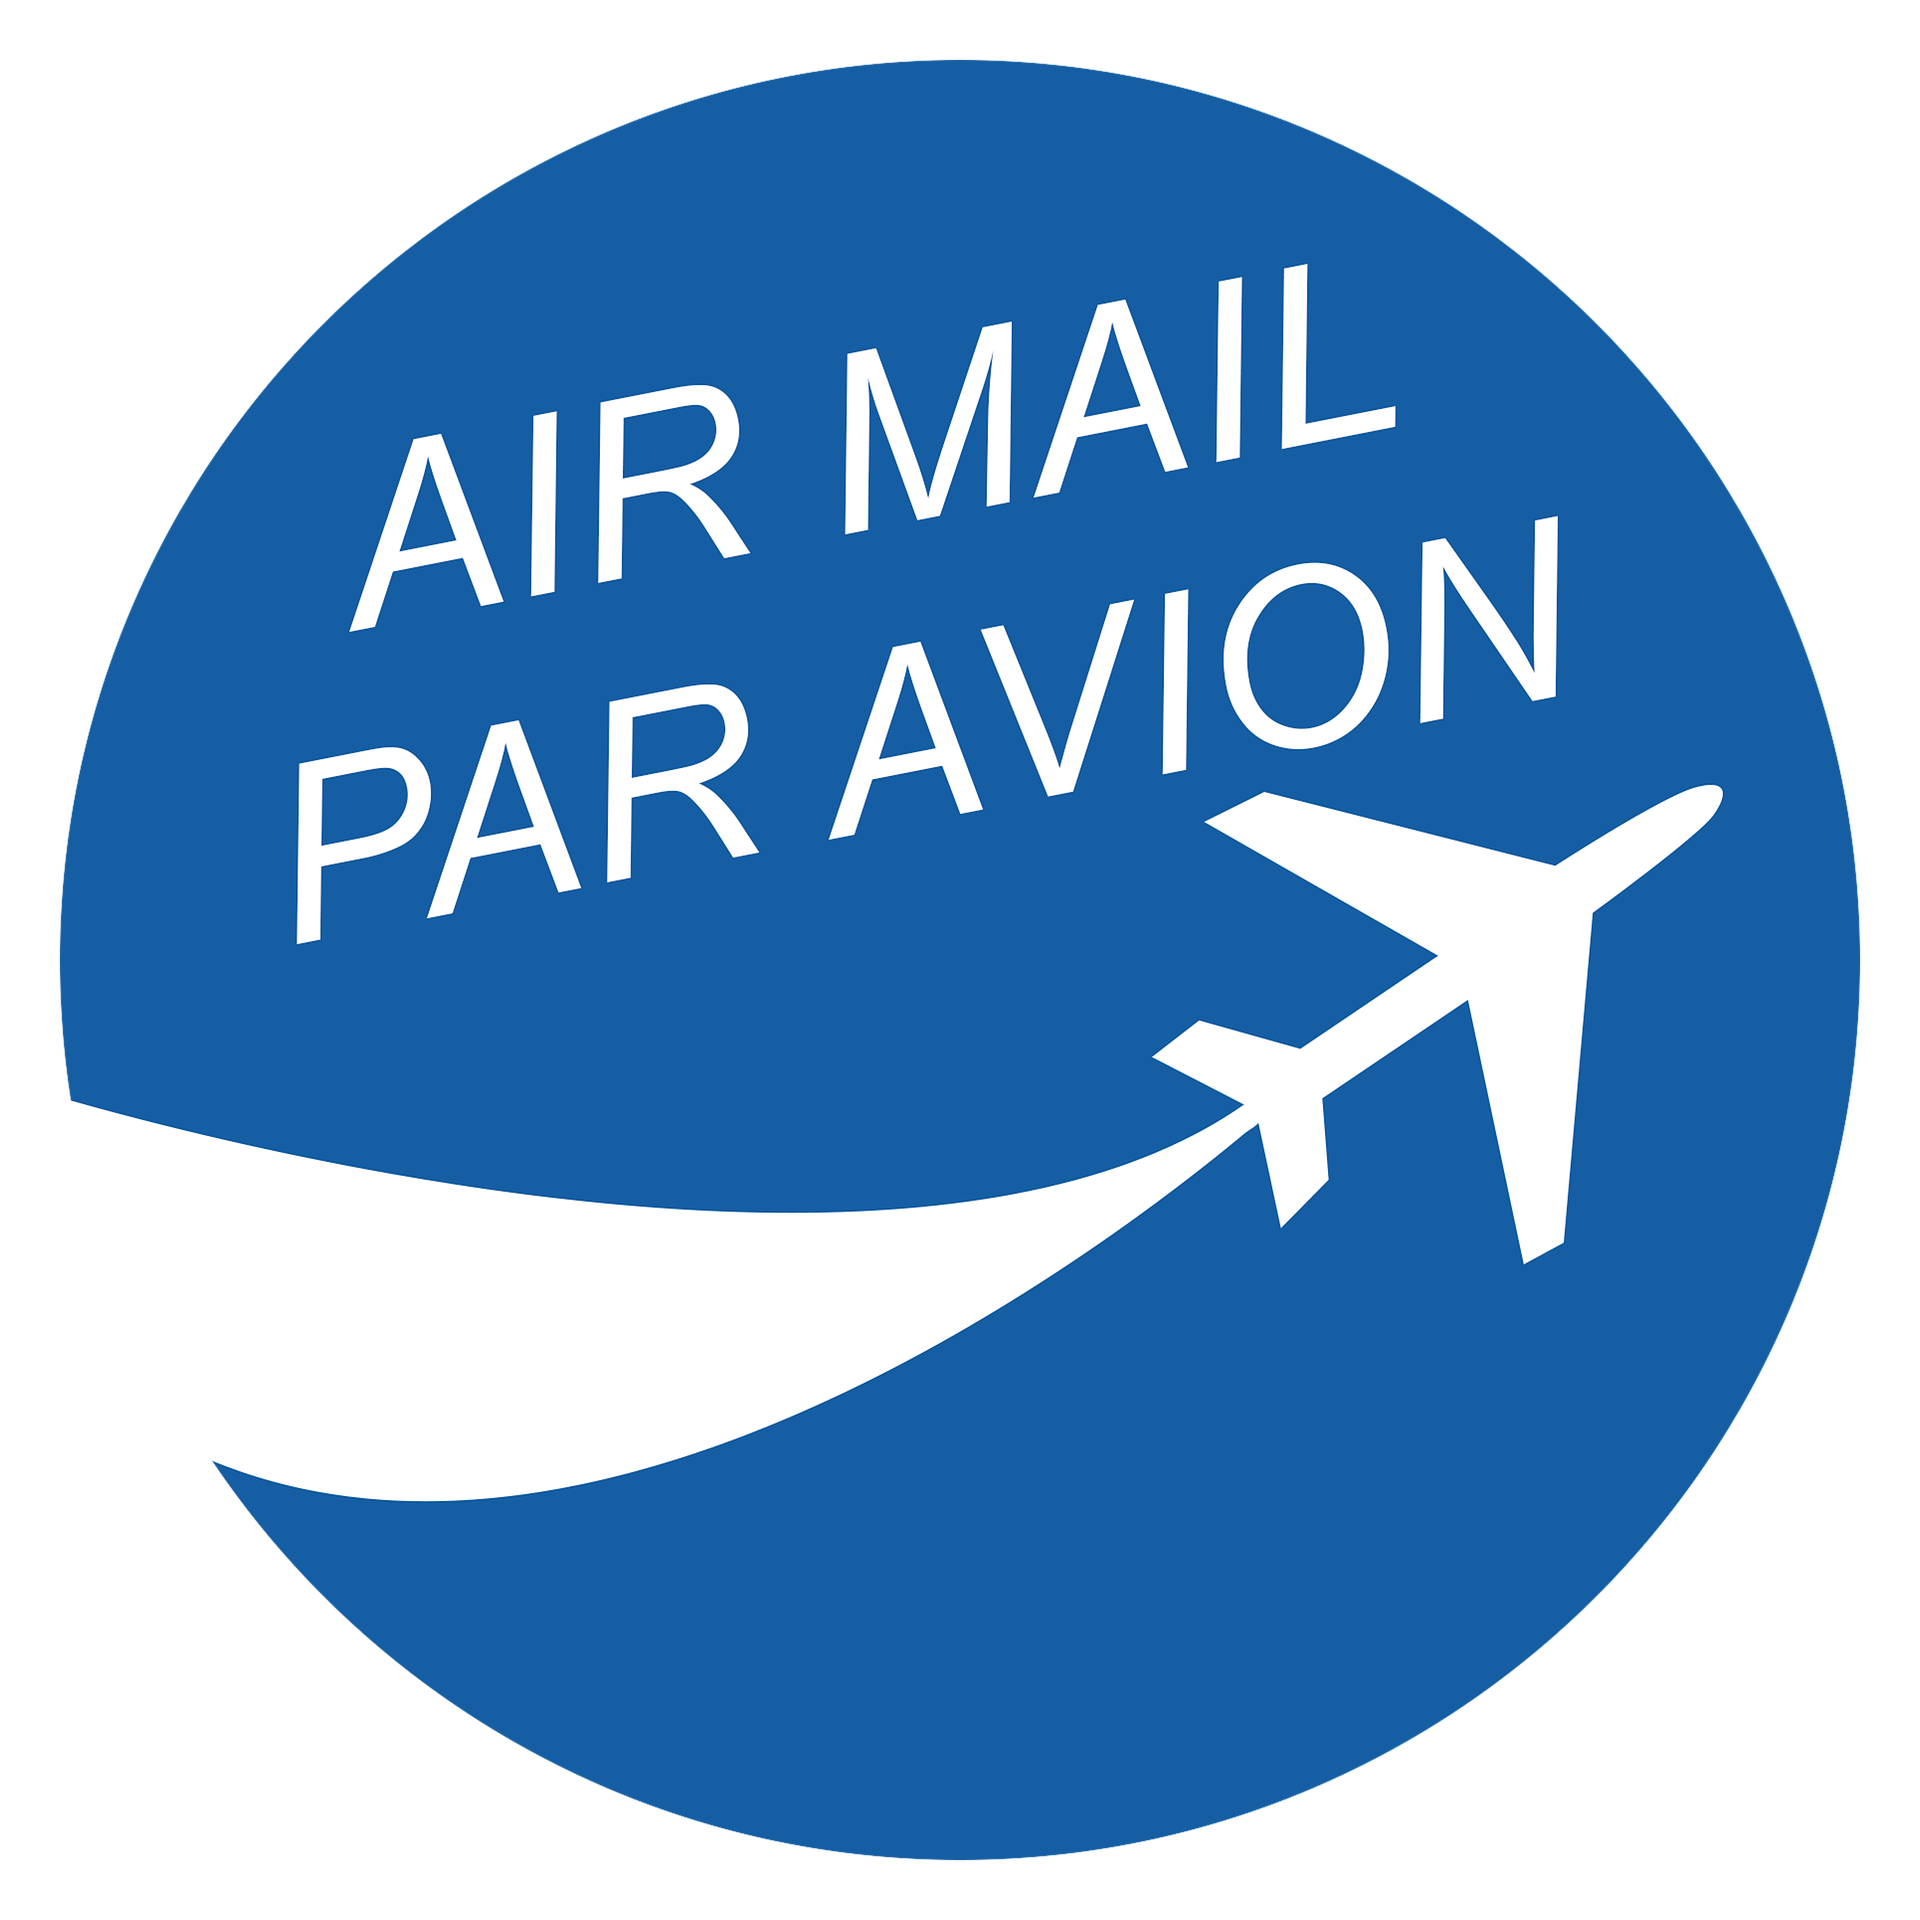 Par avion/ air mail graphic